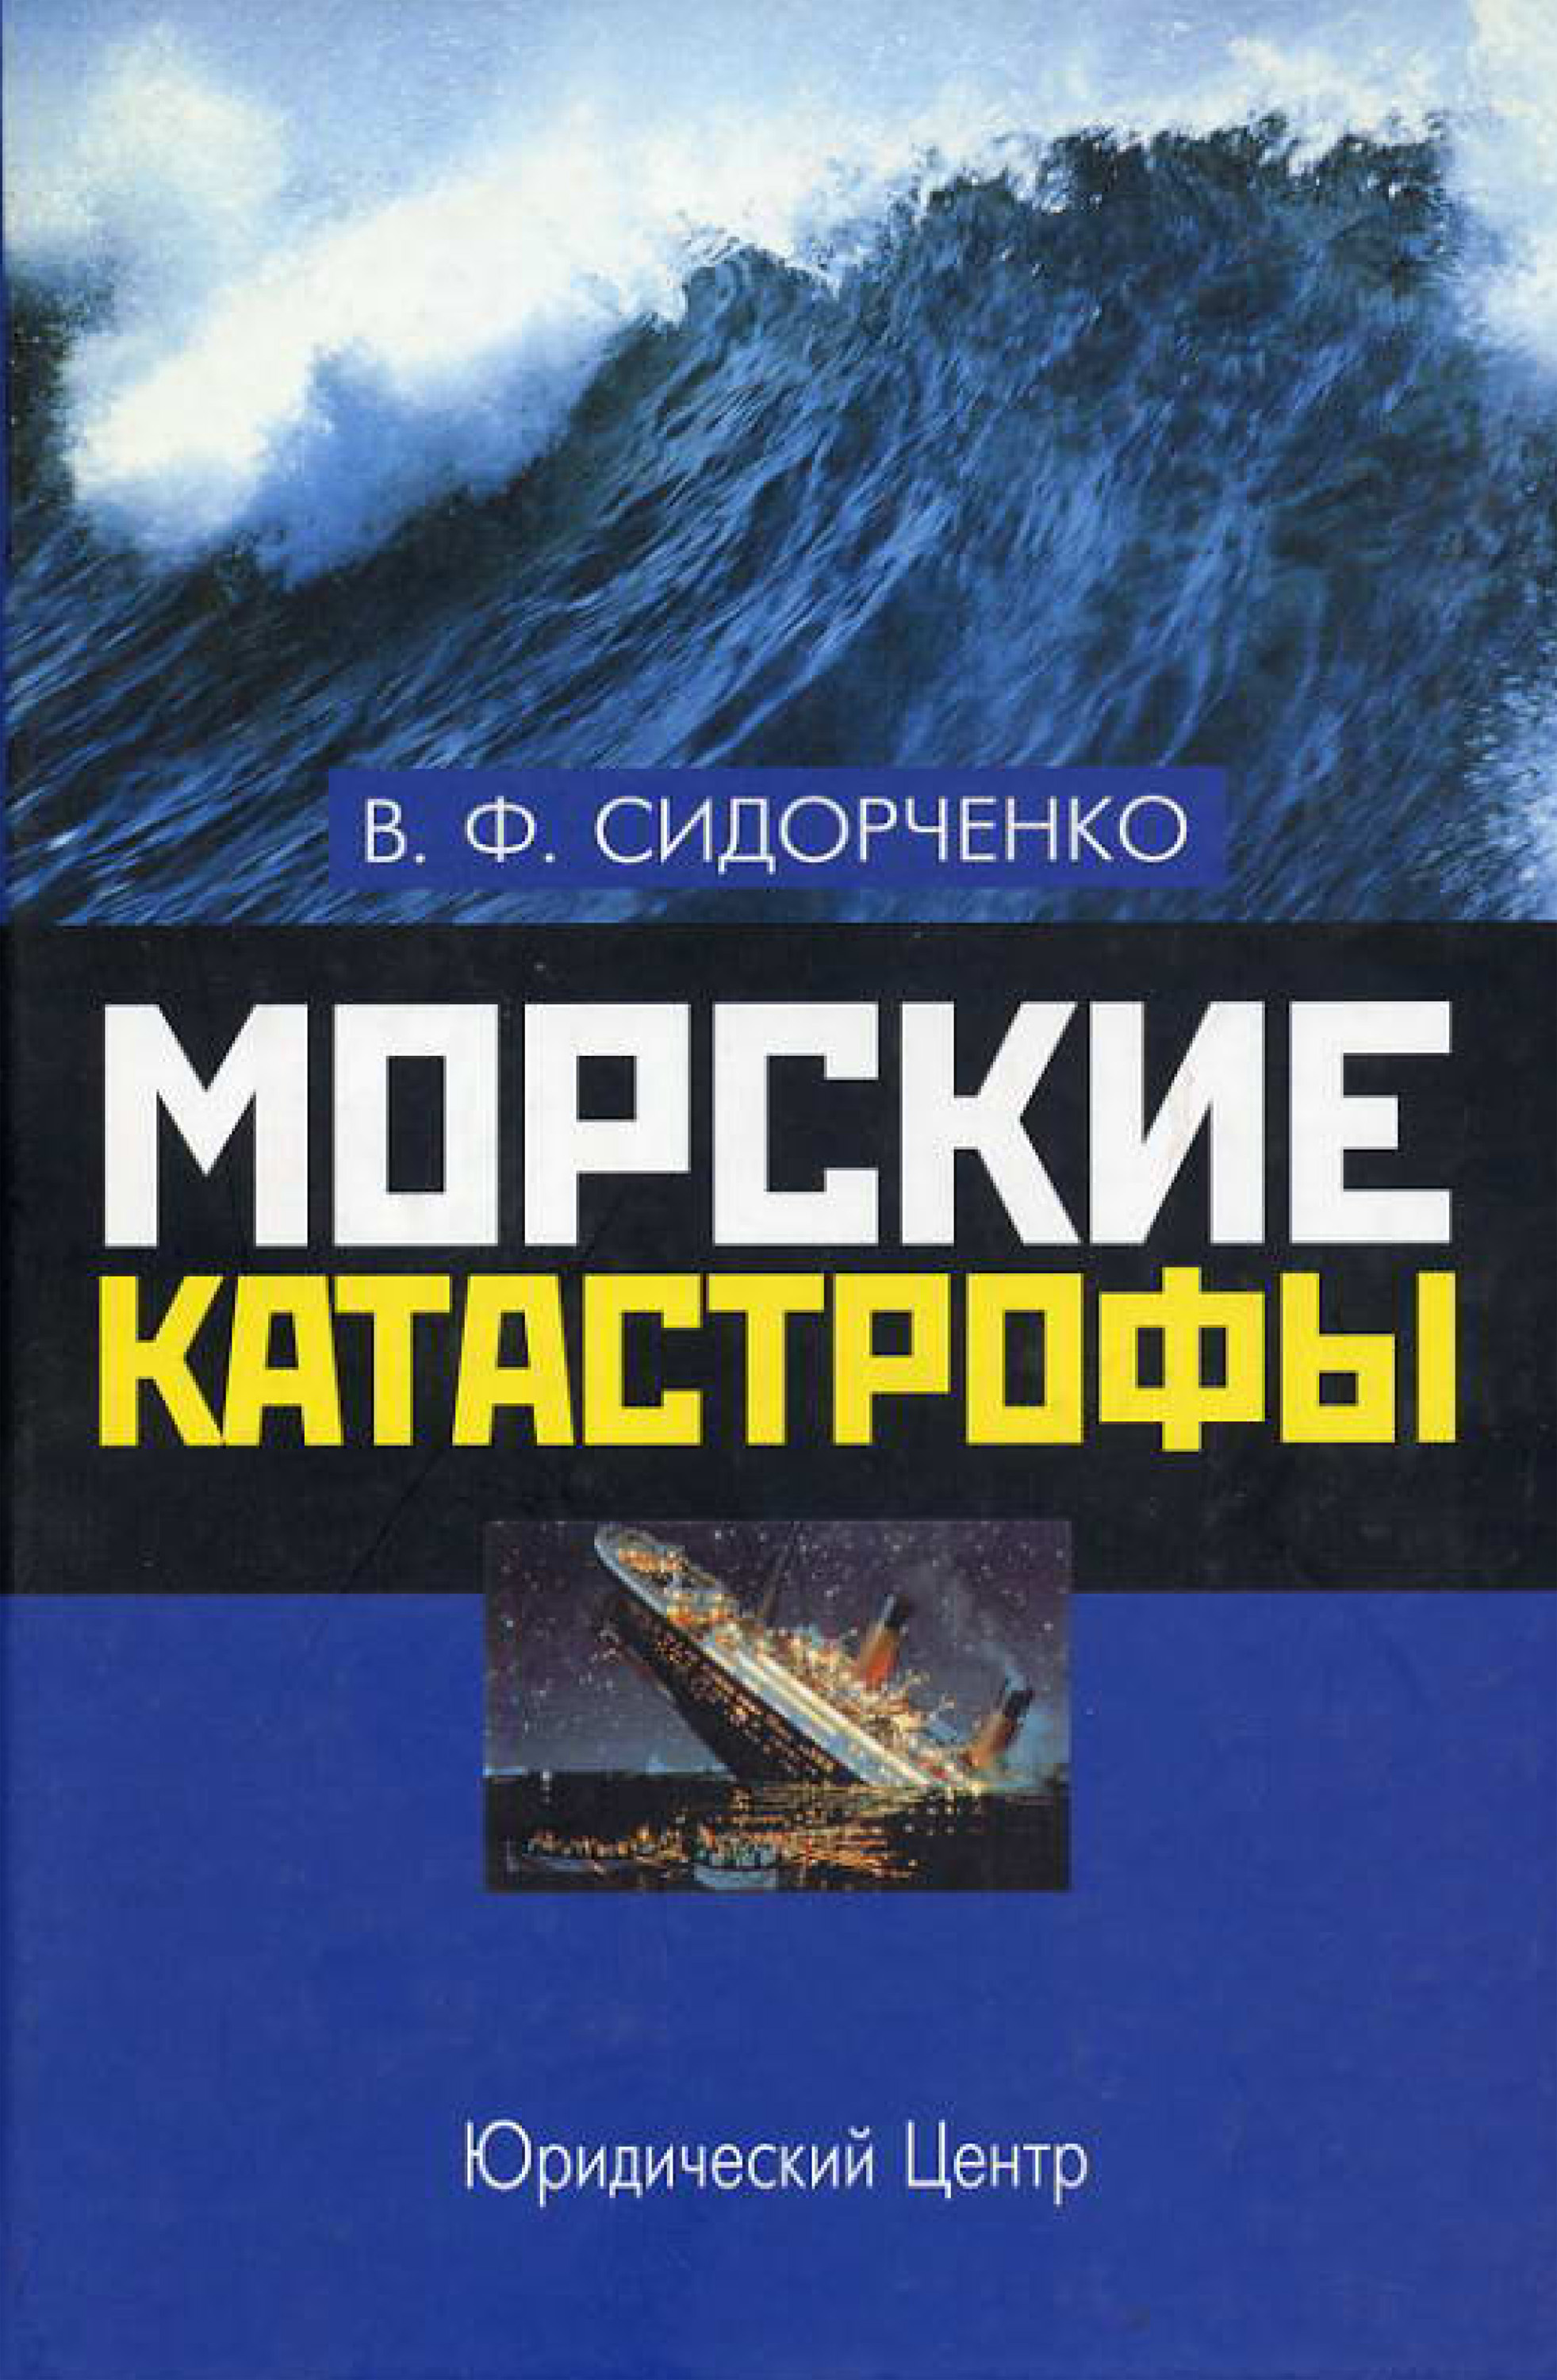 Книга Морские катастрофы из серии , созданная Виктор Сидорченко, может относится к жанру Юриспруденция, право, Юриспруденция, право. Стоимость книги Морские катастрофы  с идентификатором 11278862 составляет 249.00 руб.